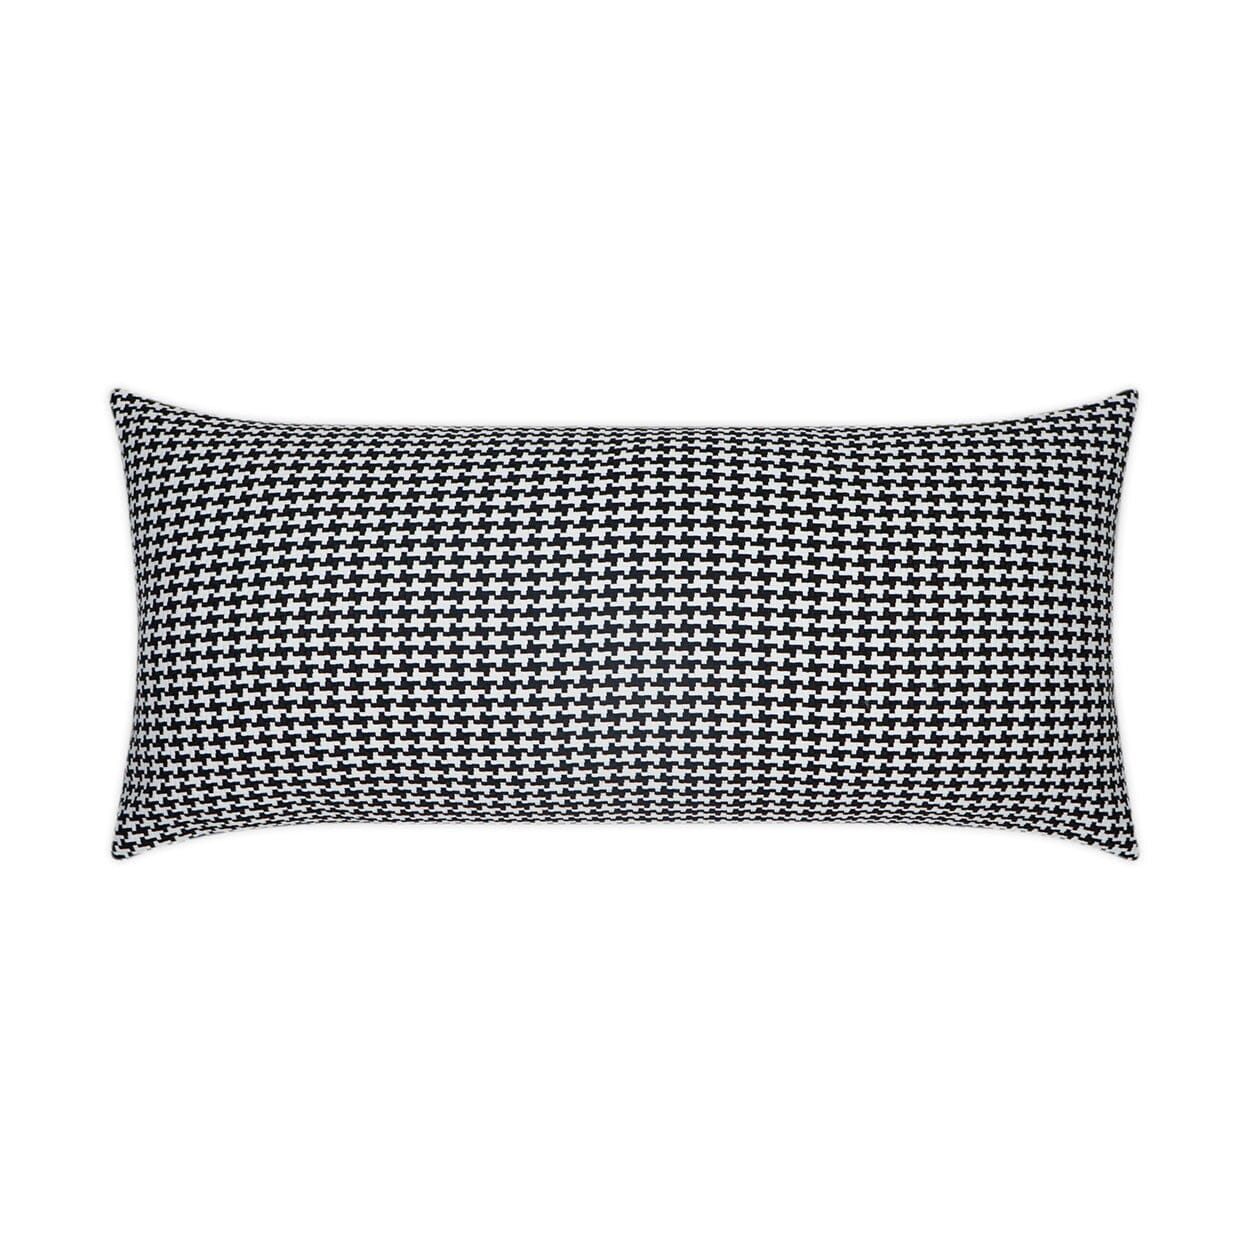 D.V. Kap 12" x 24" Outdoor Lumbar Pillow | Bedford Black Pillows D.V Kap Outdoor